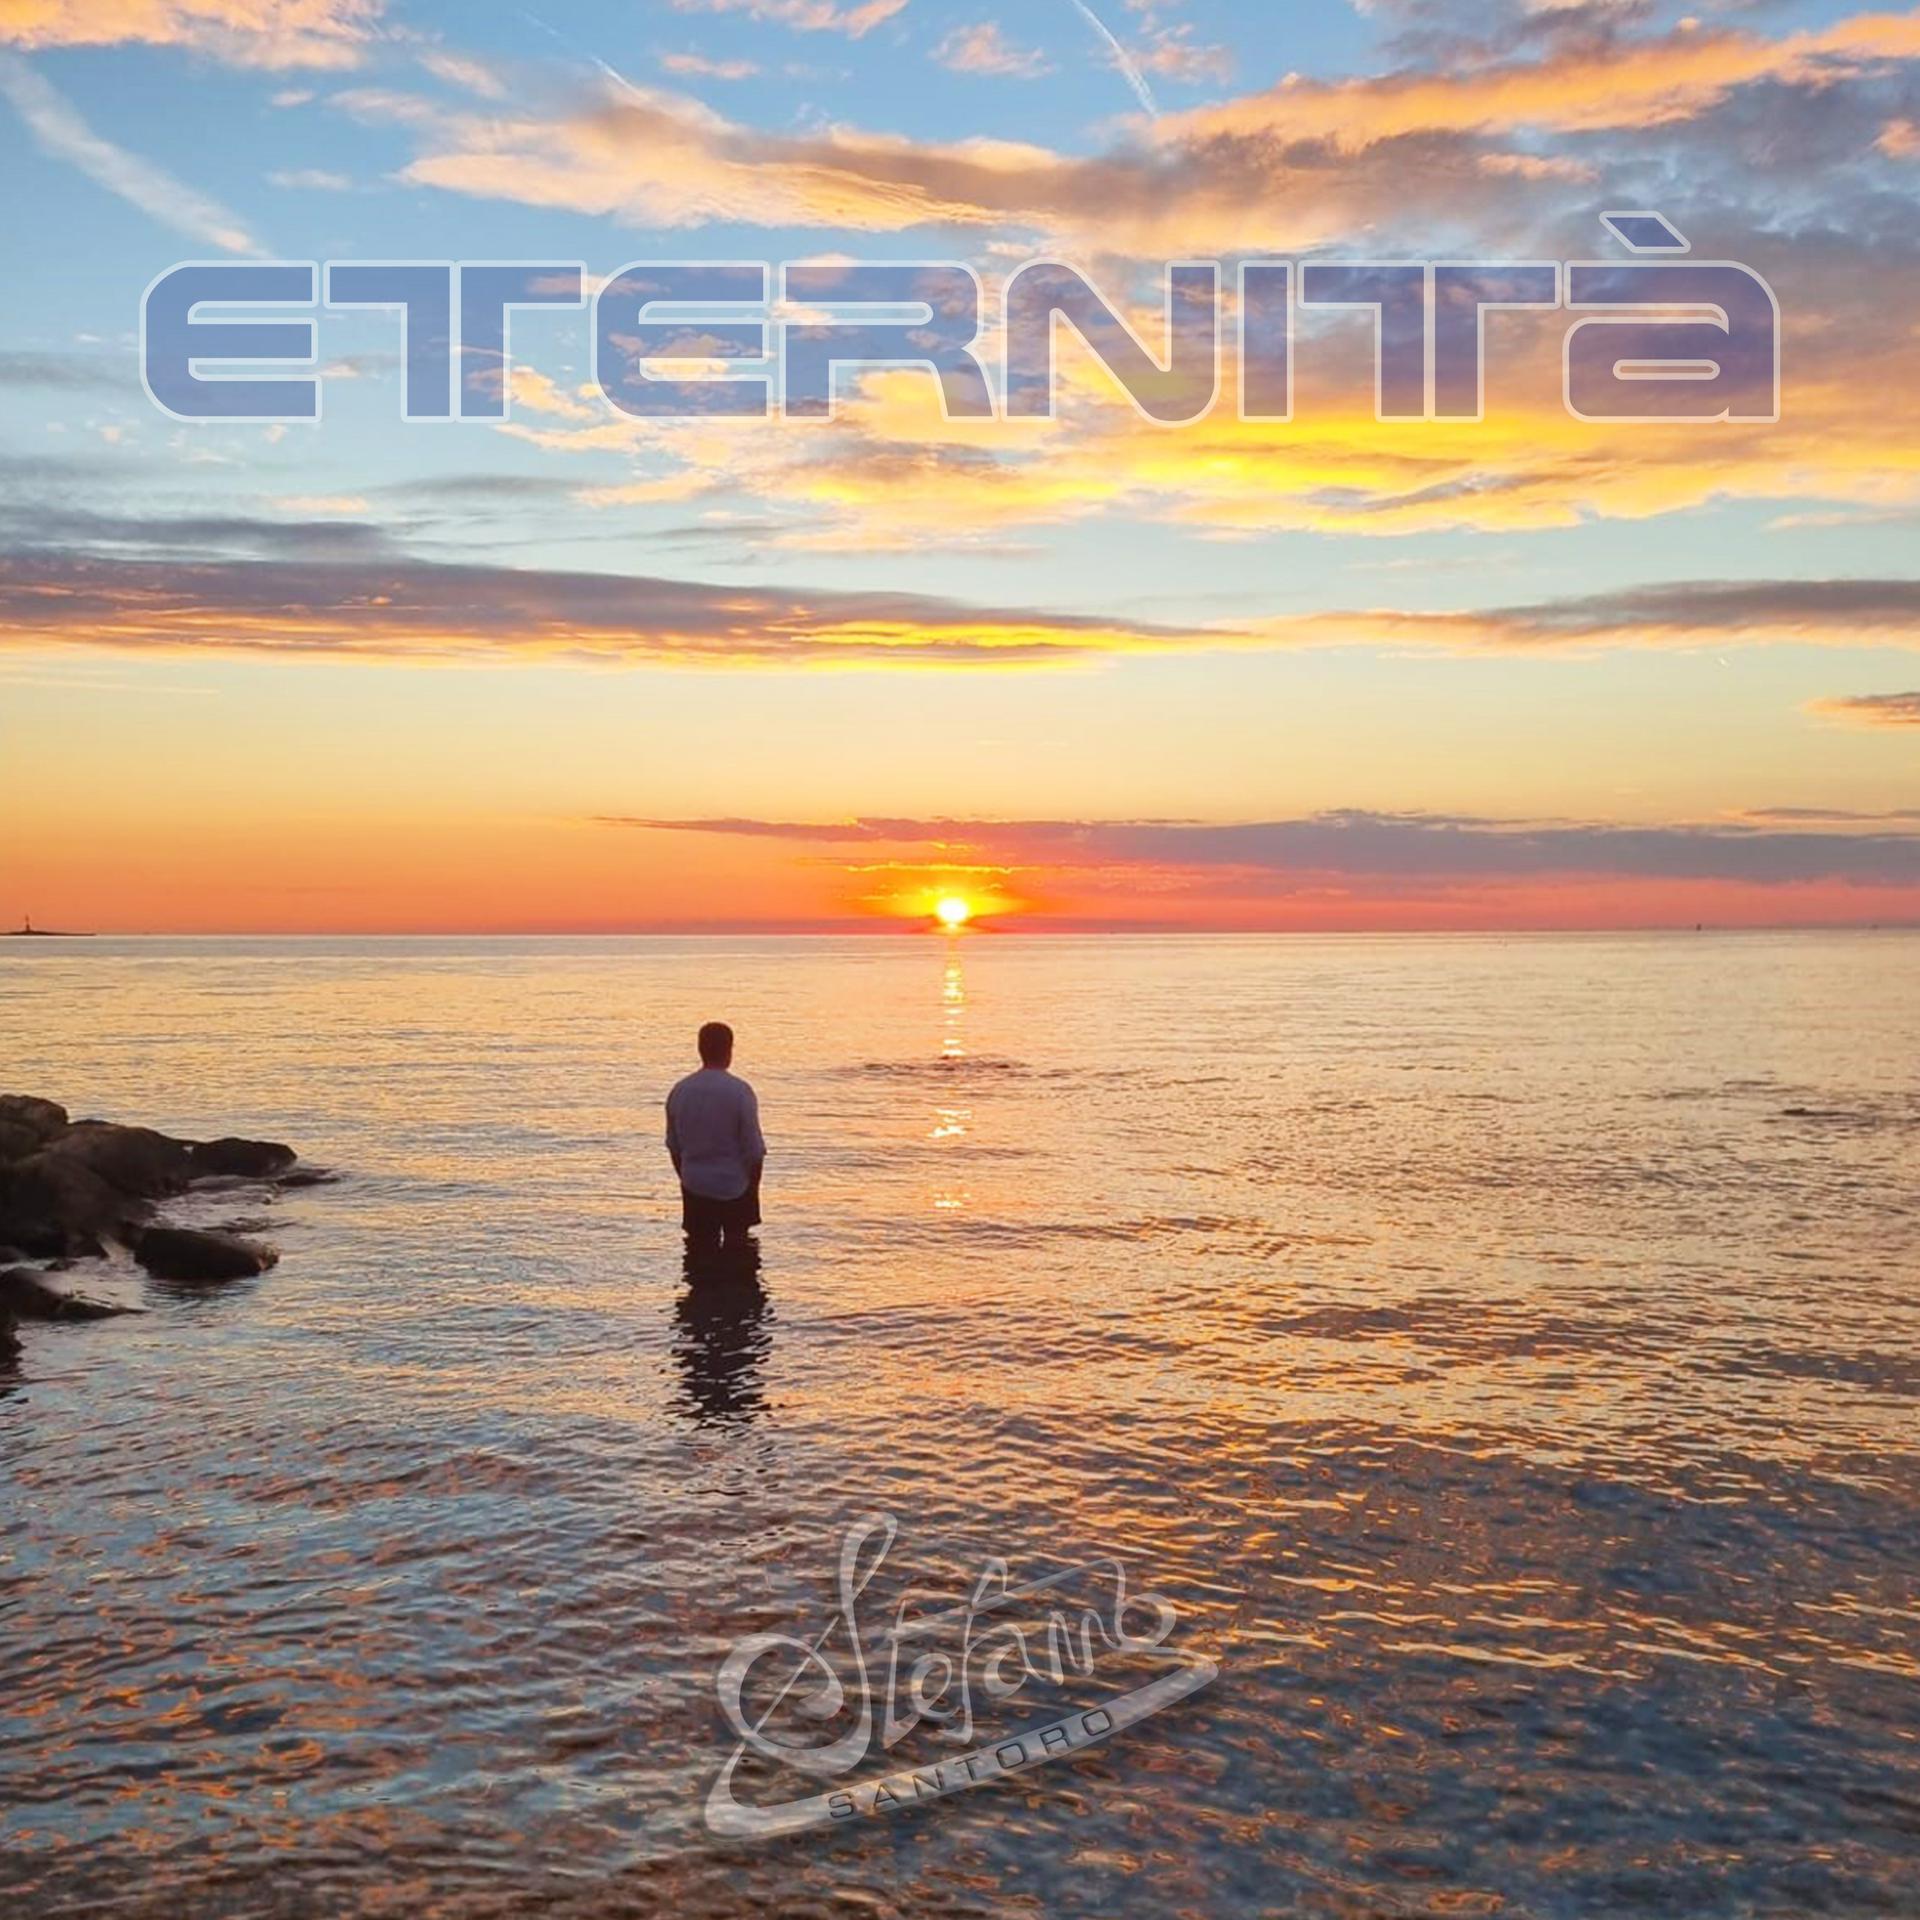 RECENSIONI. “Eternità”, il nuovo singolo di STEFANO SANTORO